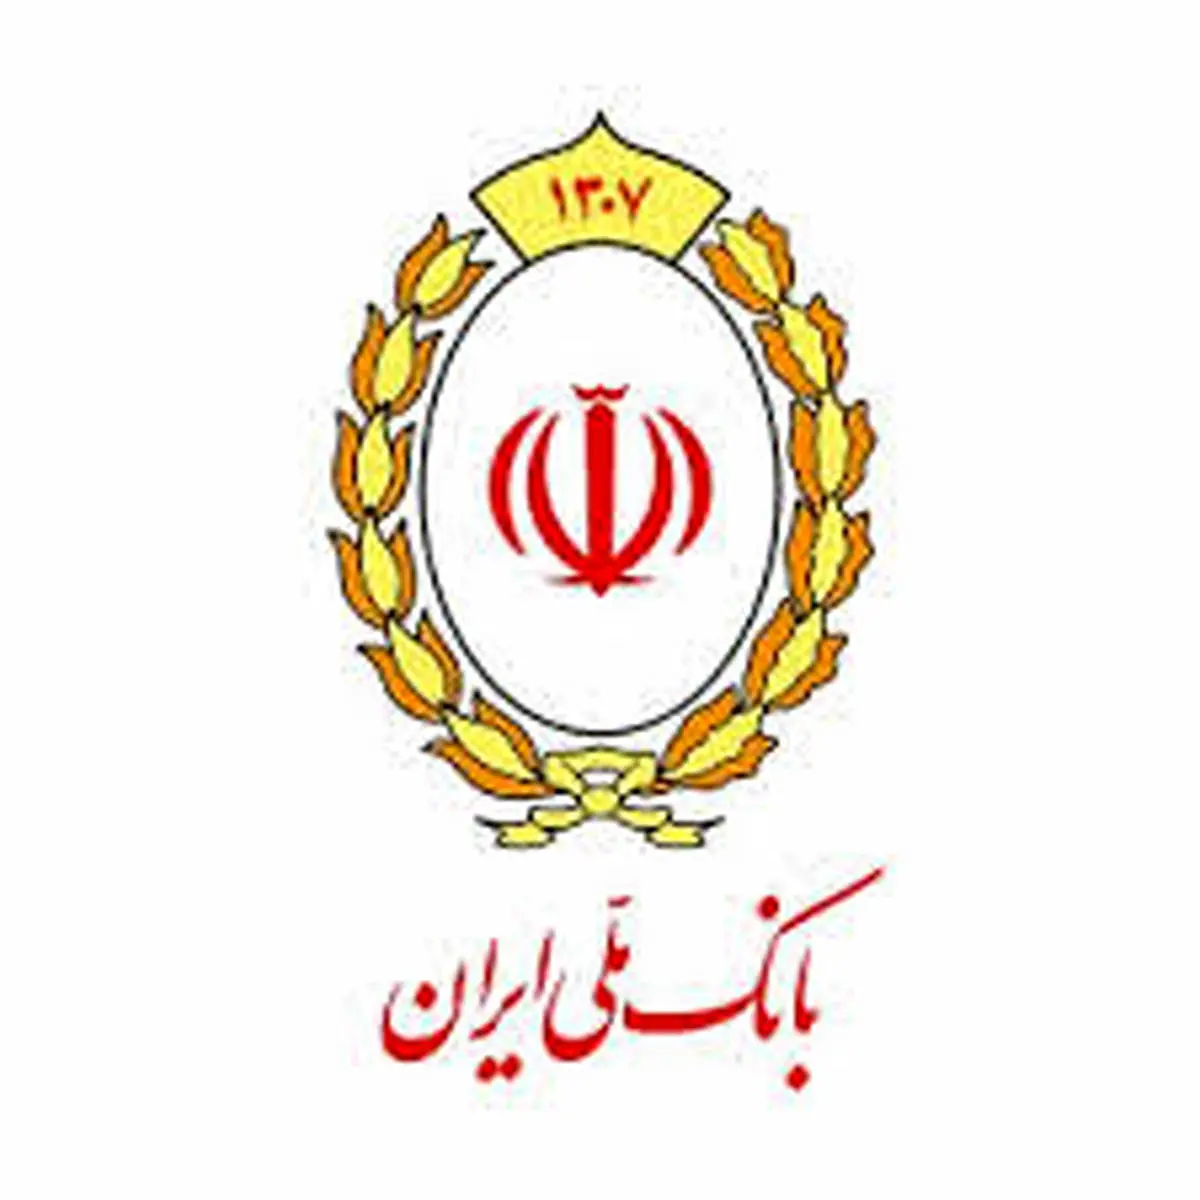 تمهیدات گسترده بانک ملی ایران در جهت مقابله با ویروس کرونا

